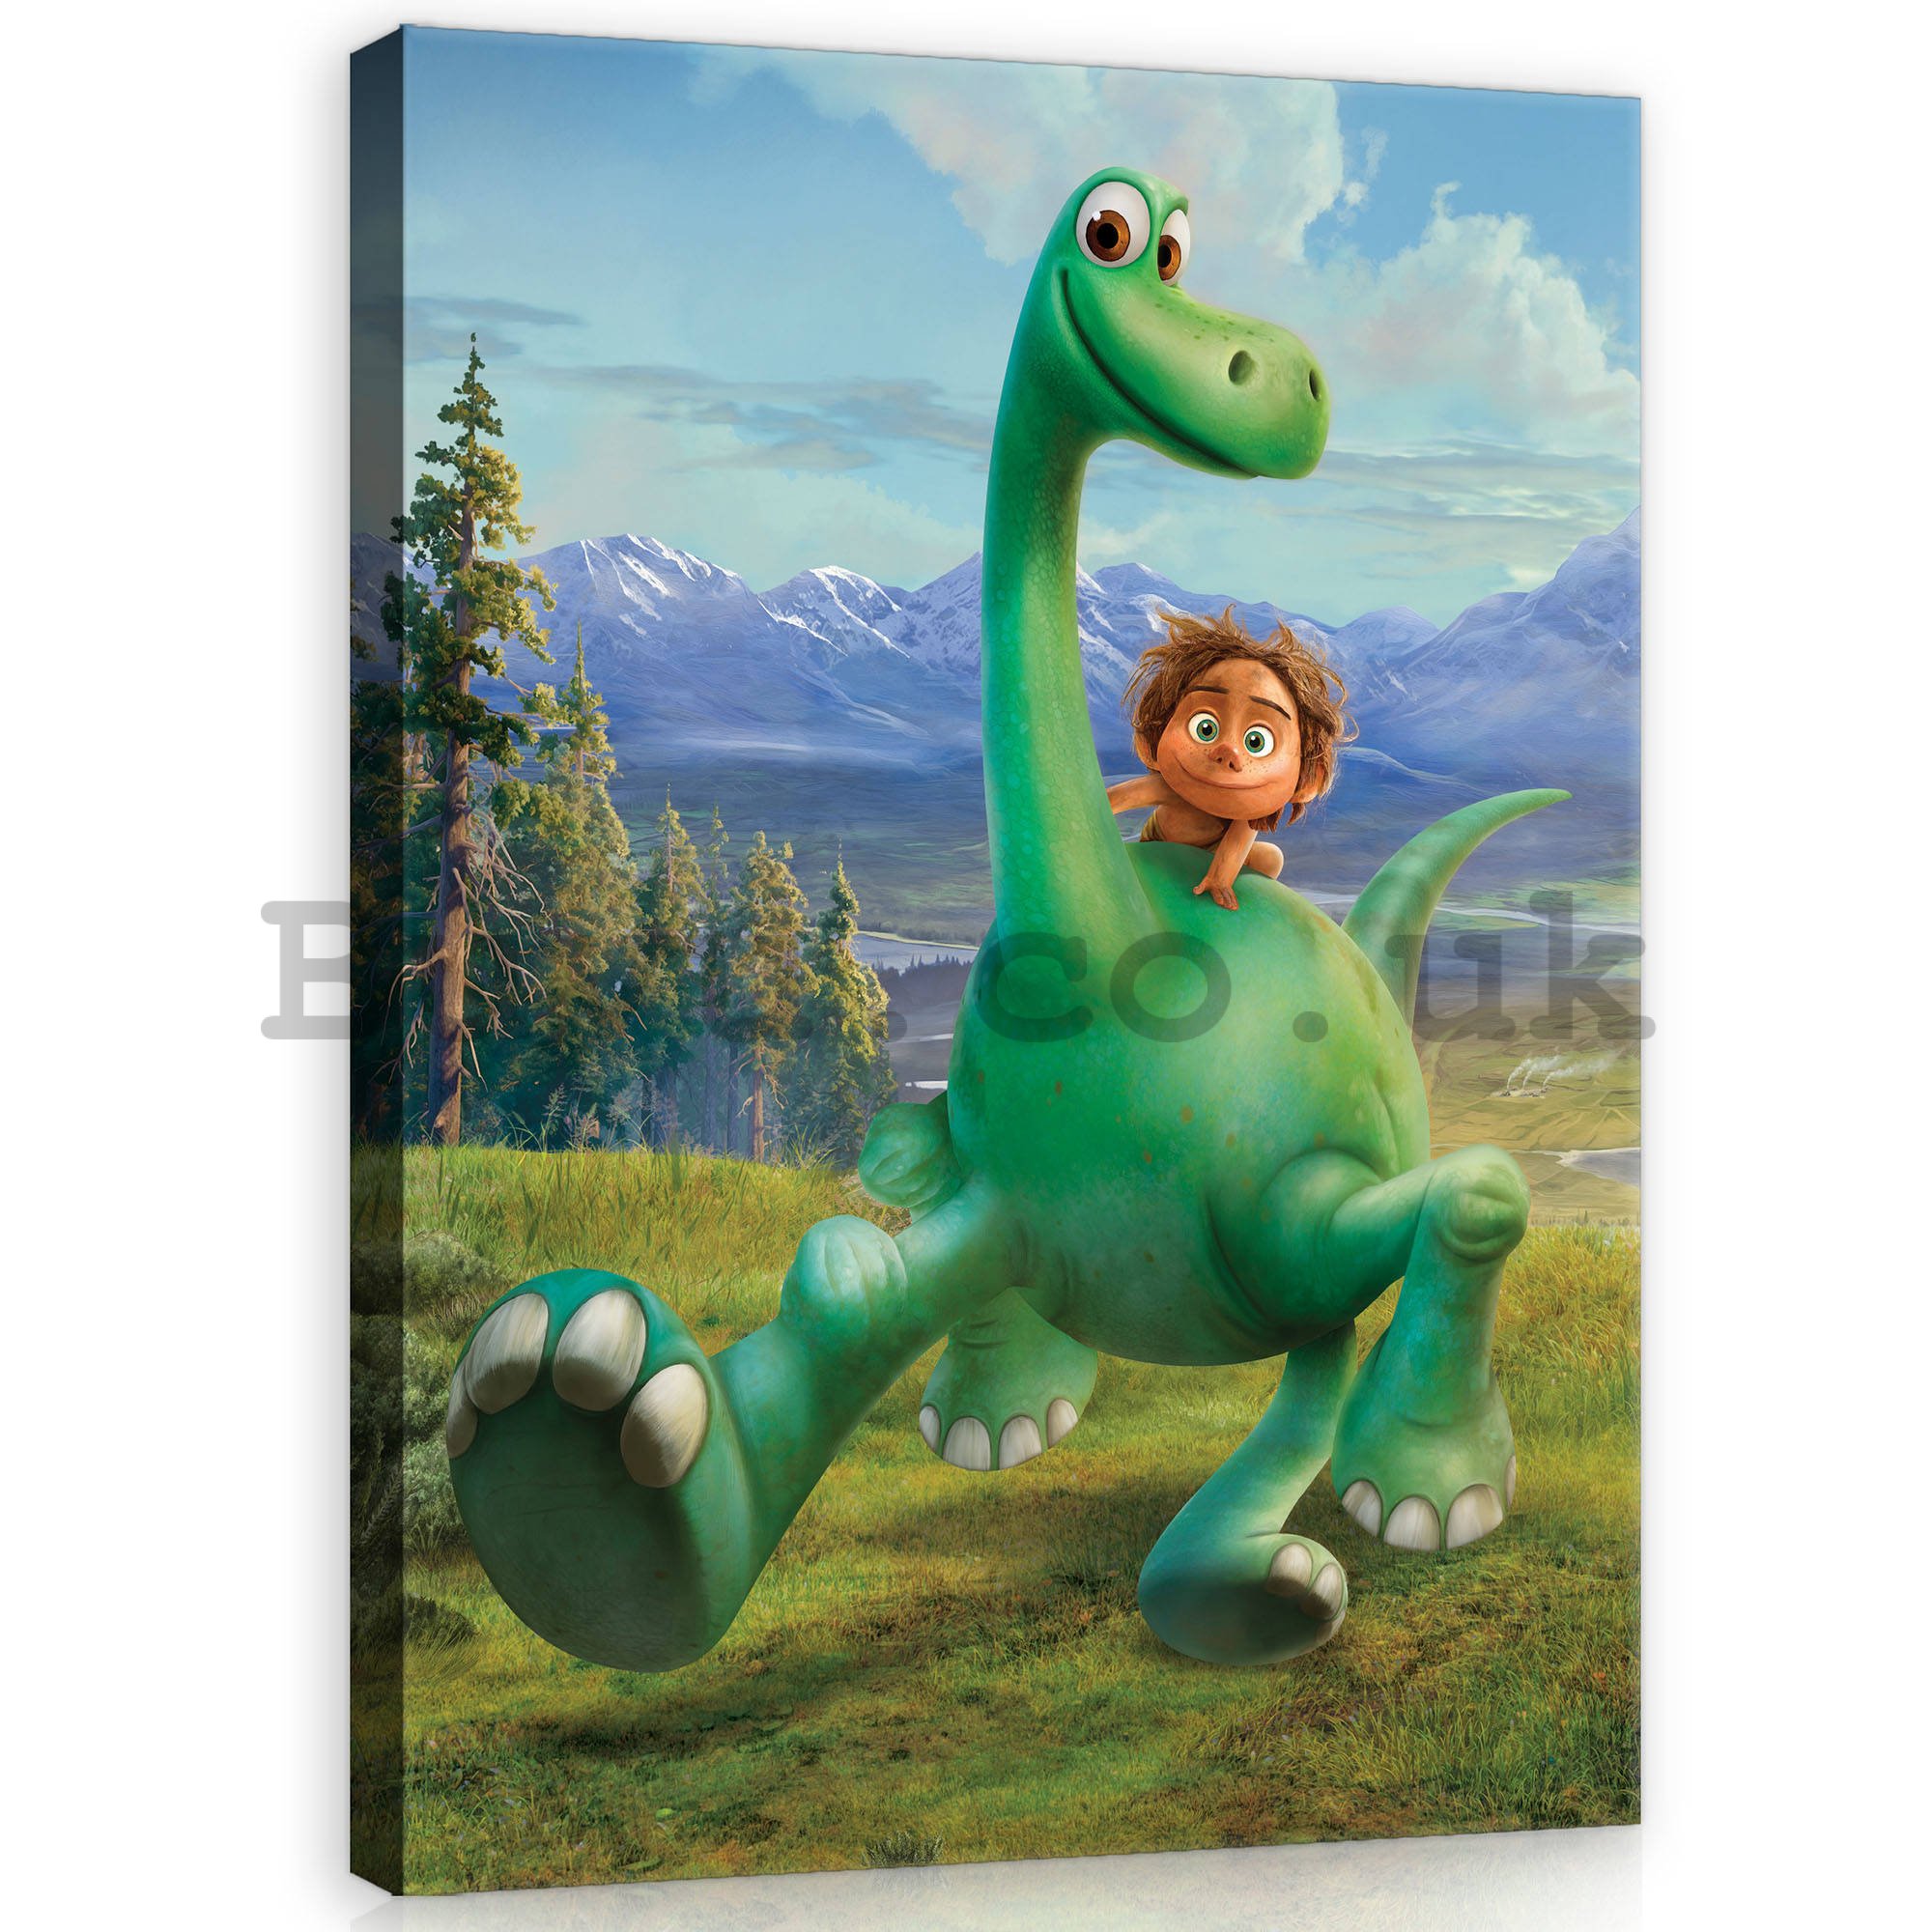 Painting on canvas: The Good Dinosaur (2) - 75x100 cm